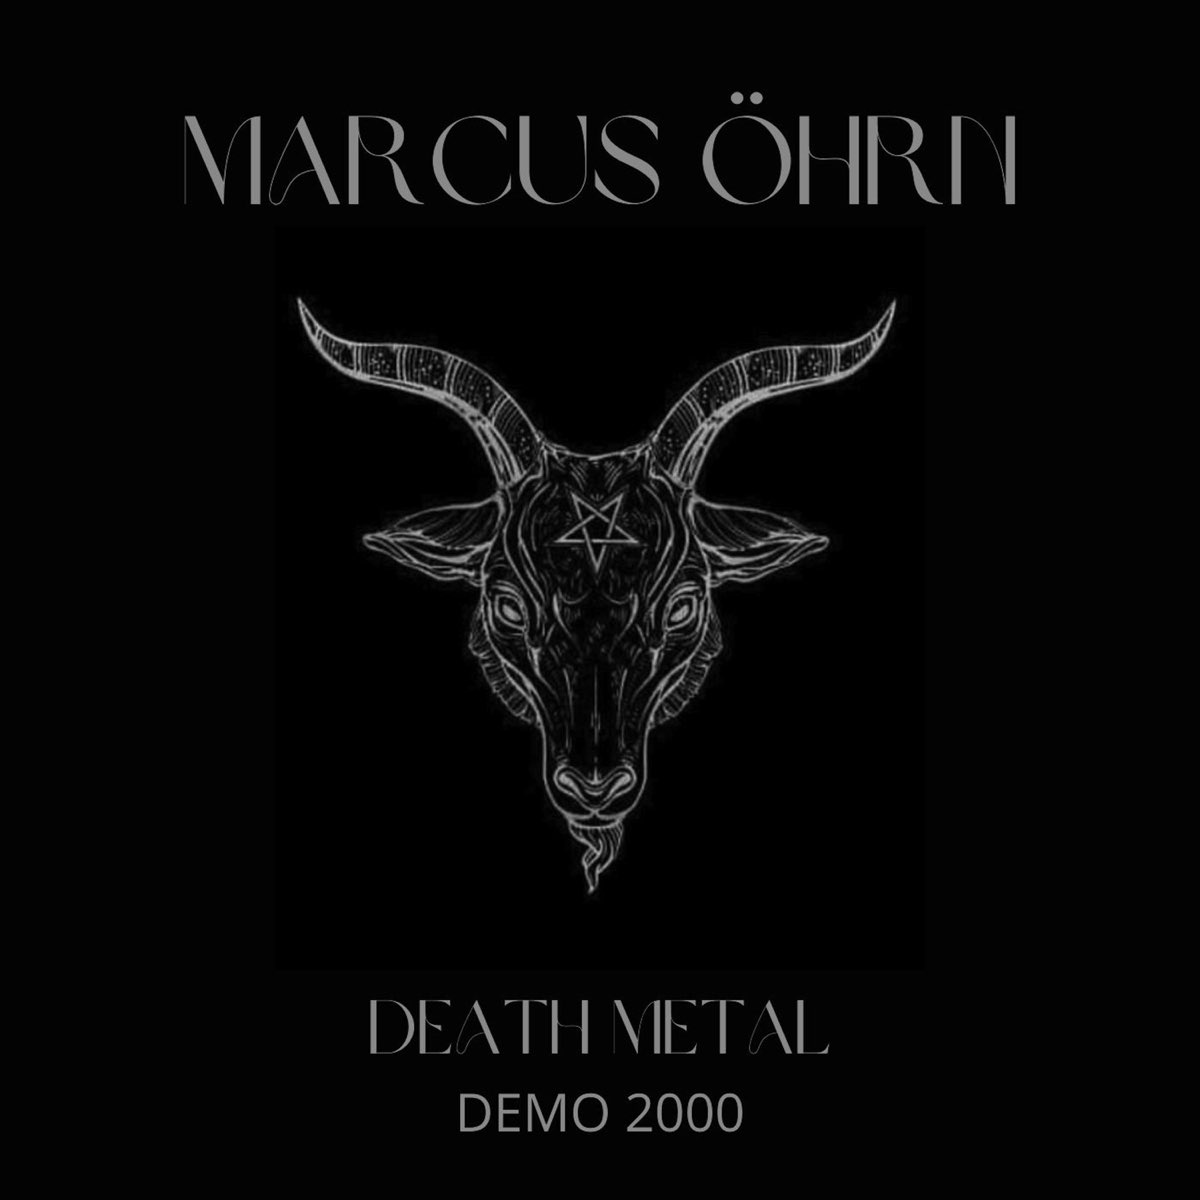 Demo 2000. Nightrage - Demo 2000. Demos 2000